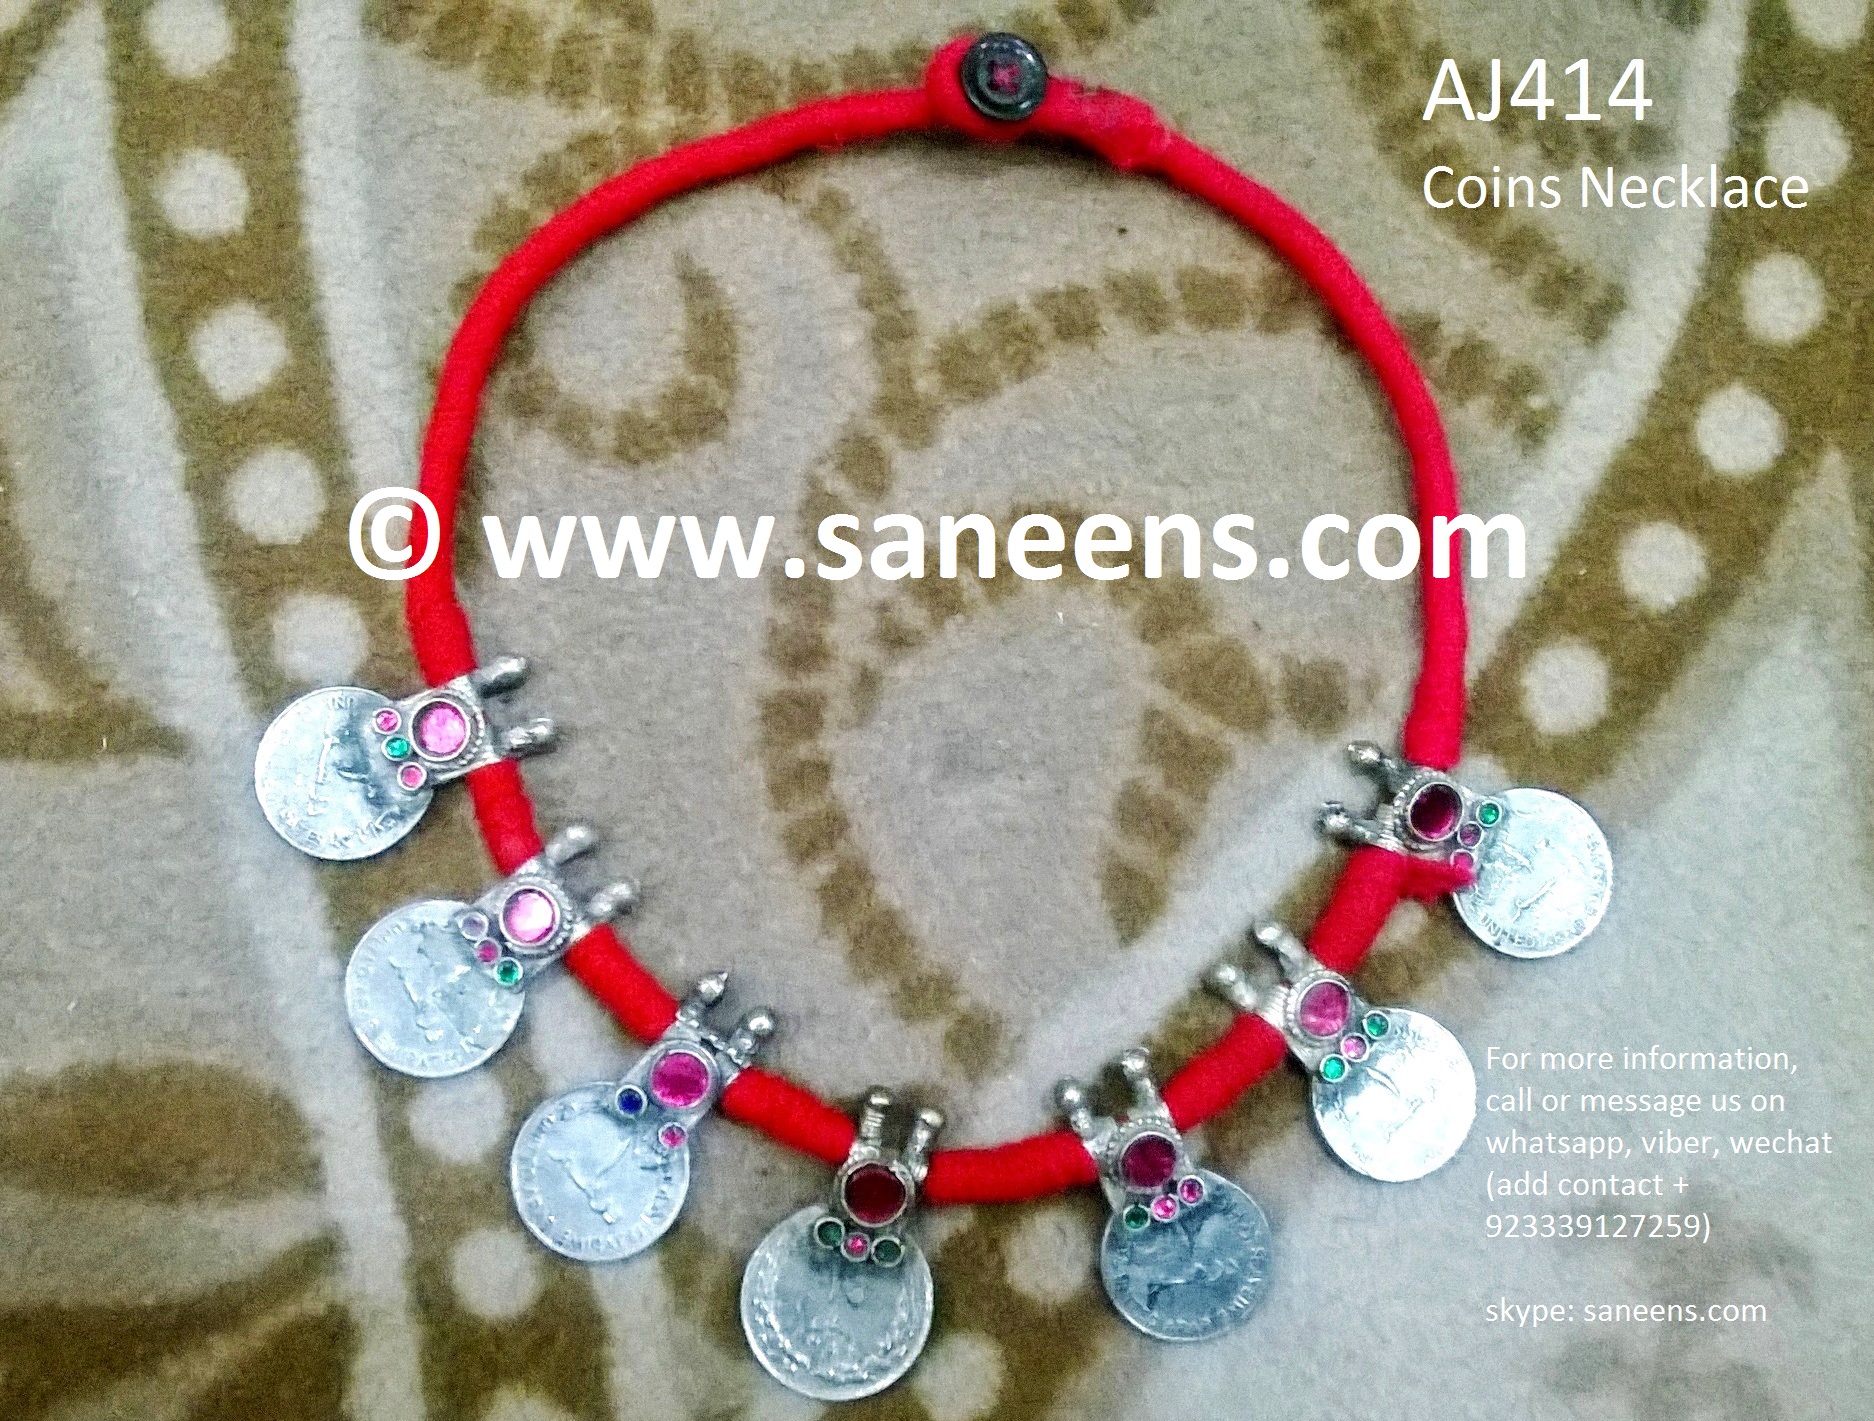 aj414-coin-necklace-2-1-.jpg